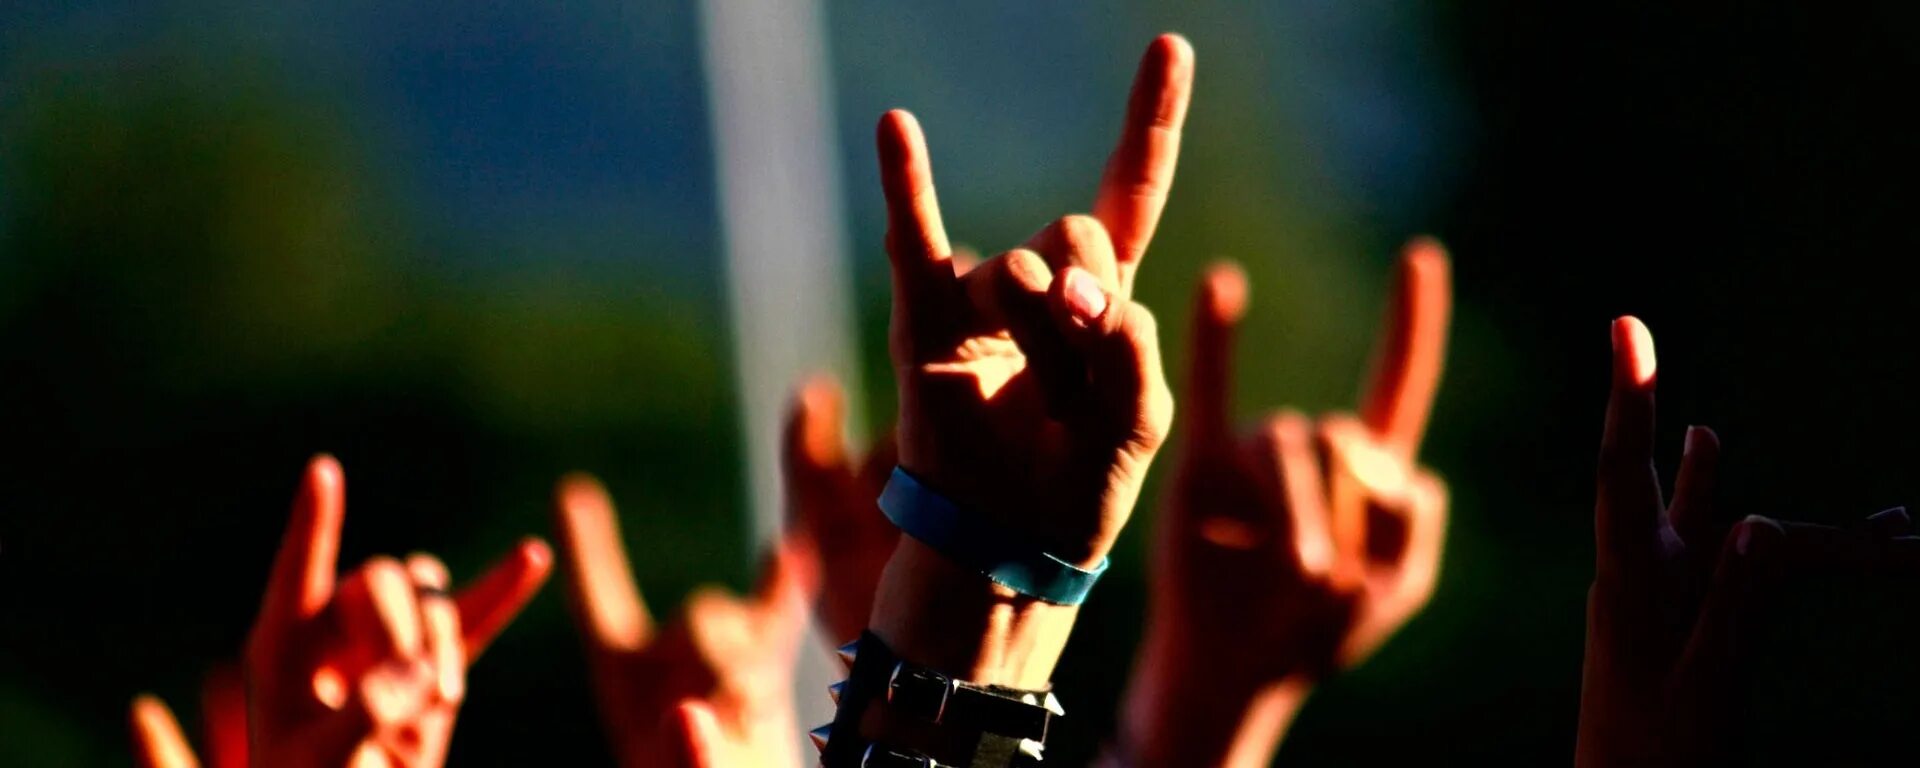 Жест коза. Жест рокеров. Рука показывает рок. Рок знак рукой. Песня друг рок